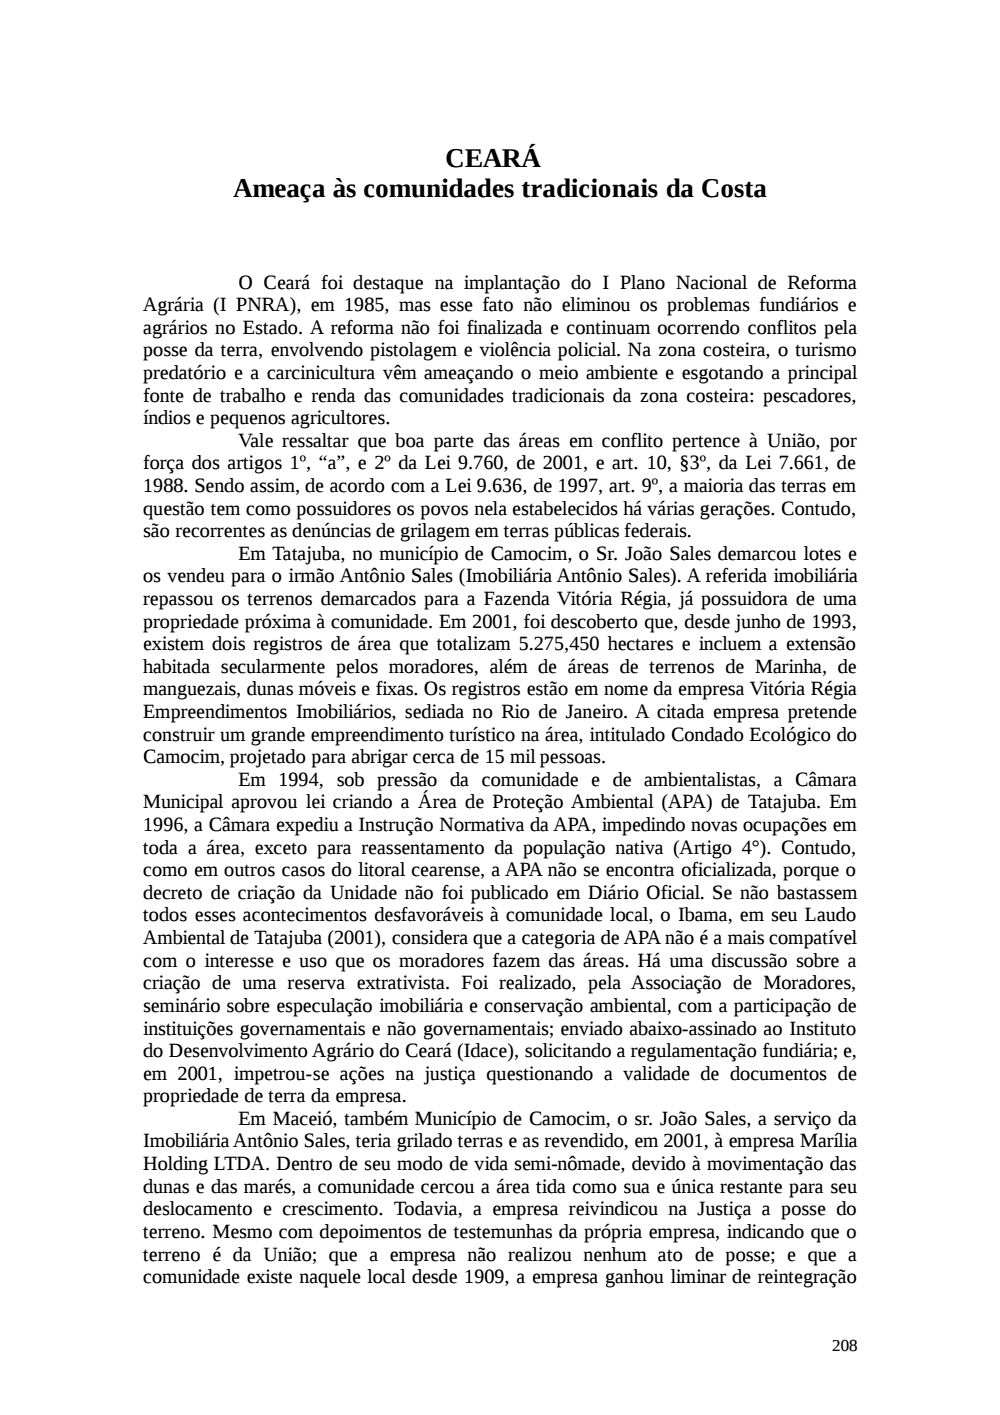 Page 208 from Relatório final da comissão